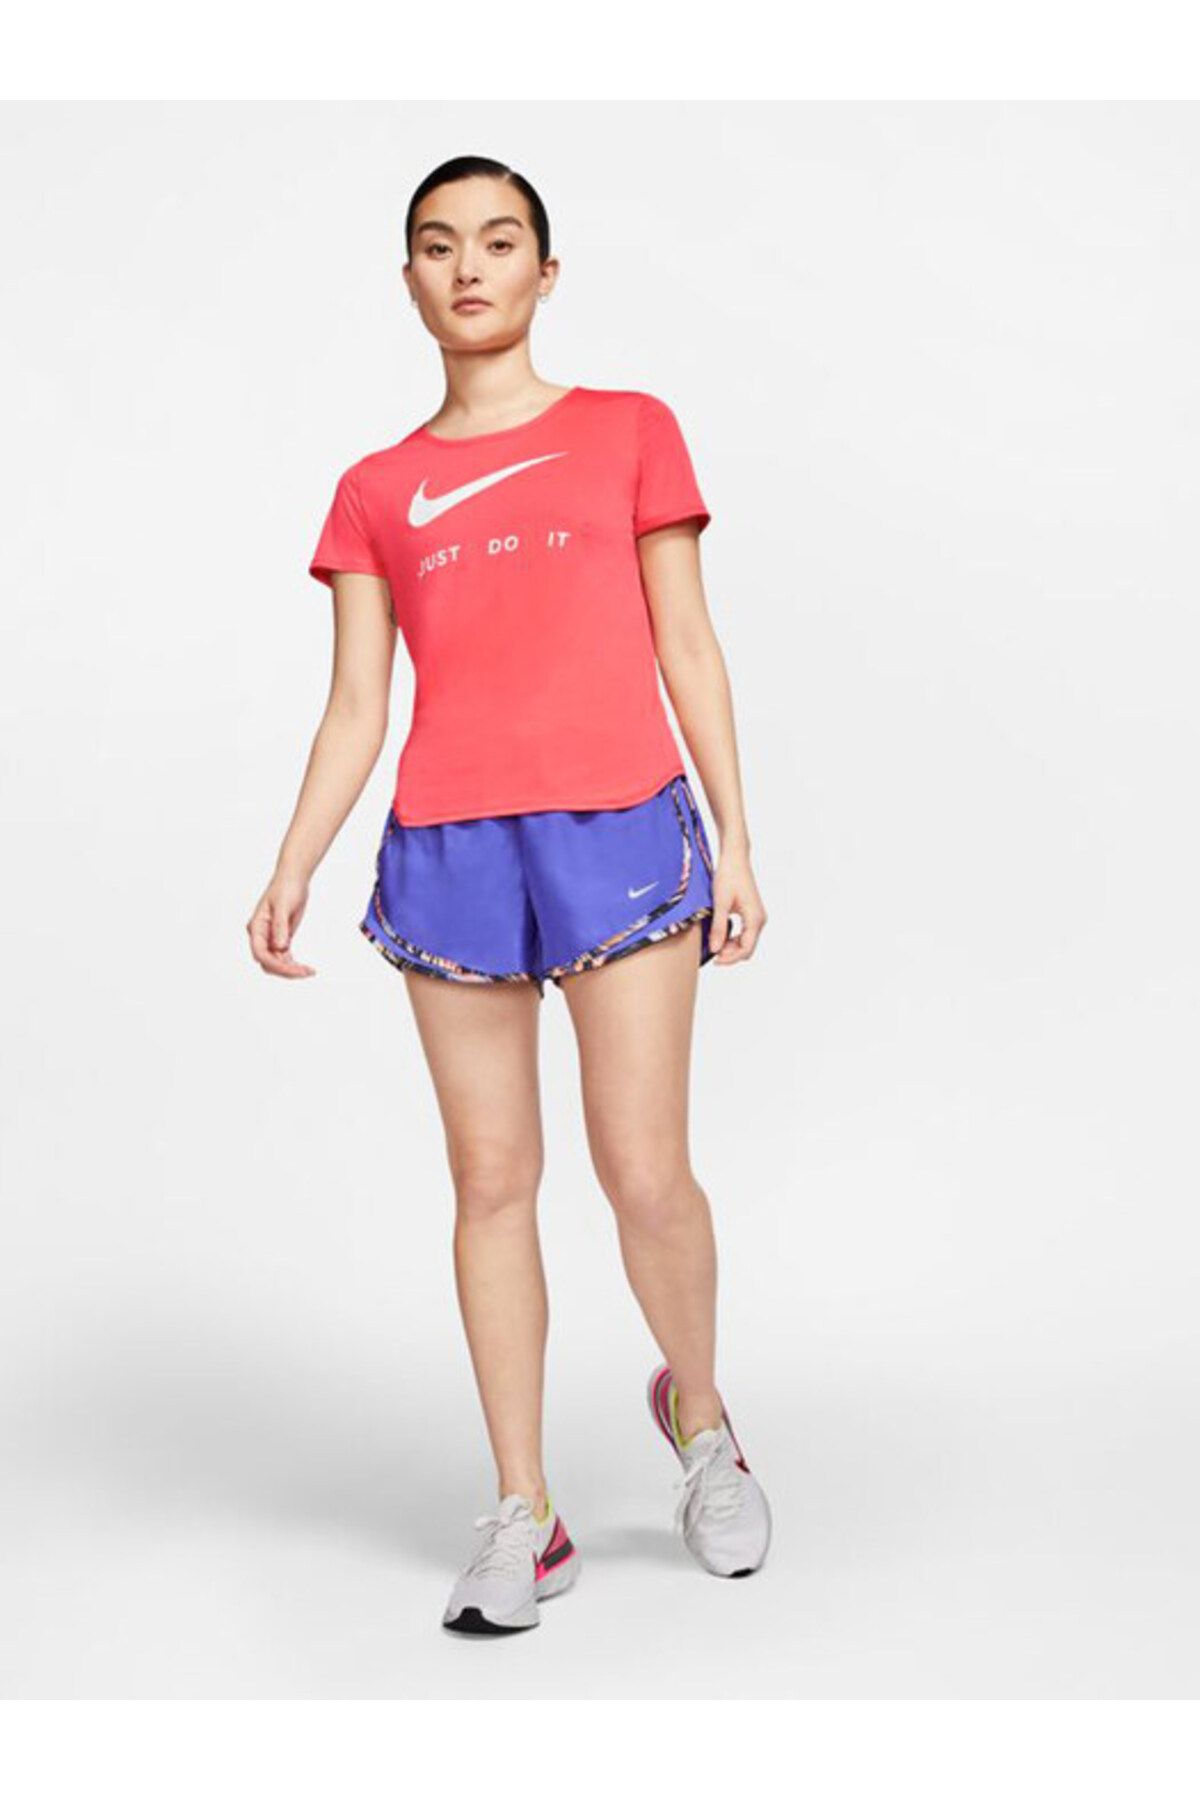 Nike Women's W Nk Top Ss Swsh Run T-shirt - Cj1970-814